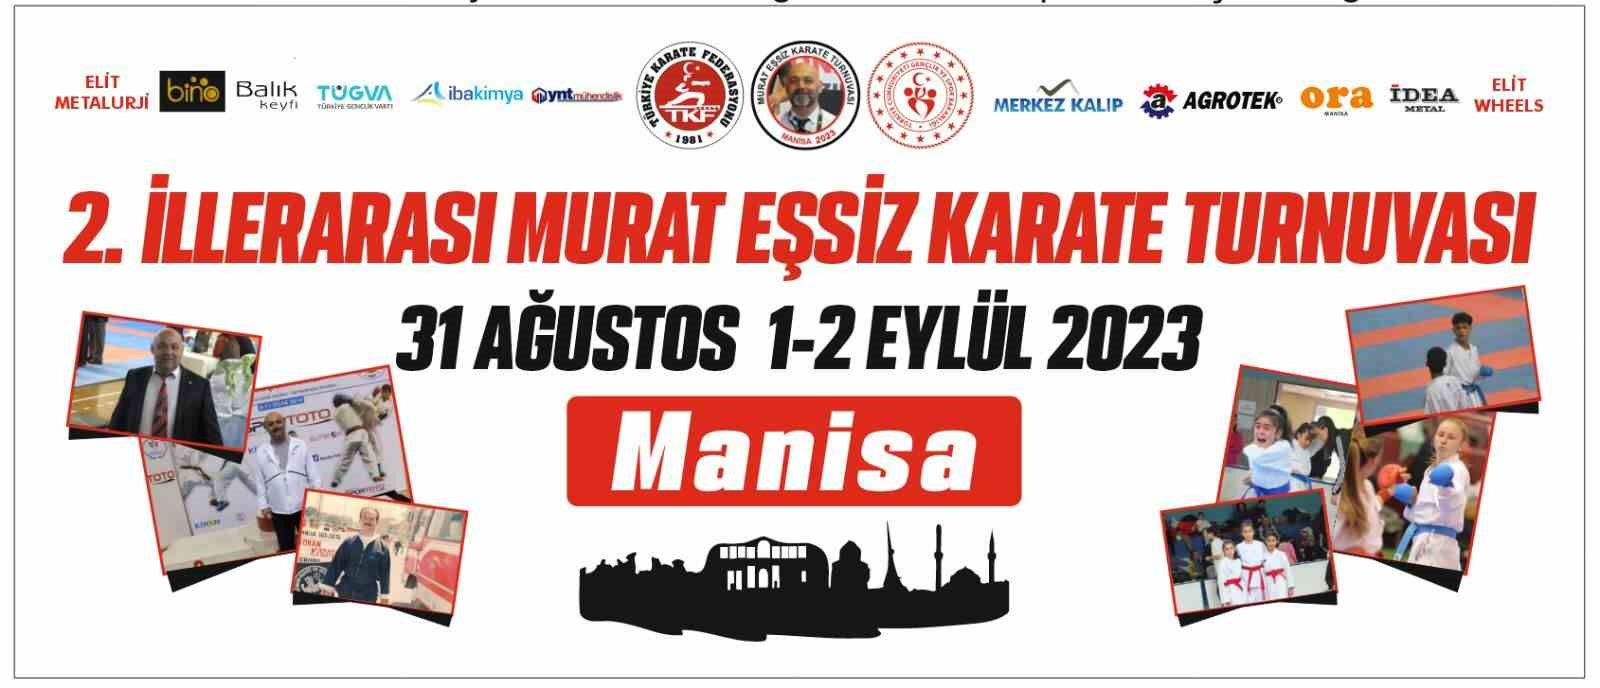 Manisa’da 2. Murat Eşsiz Karate Turnuvası başlıyor